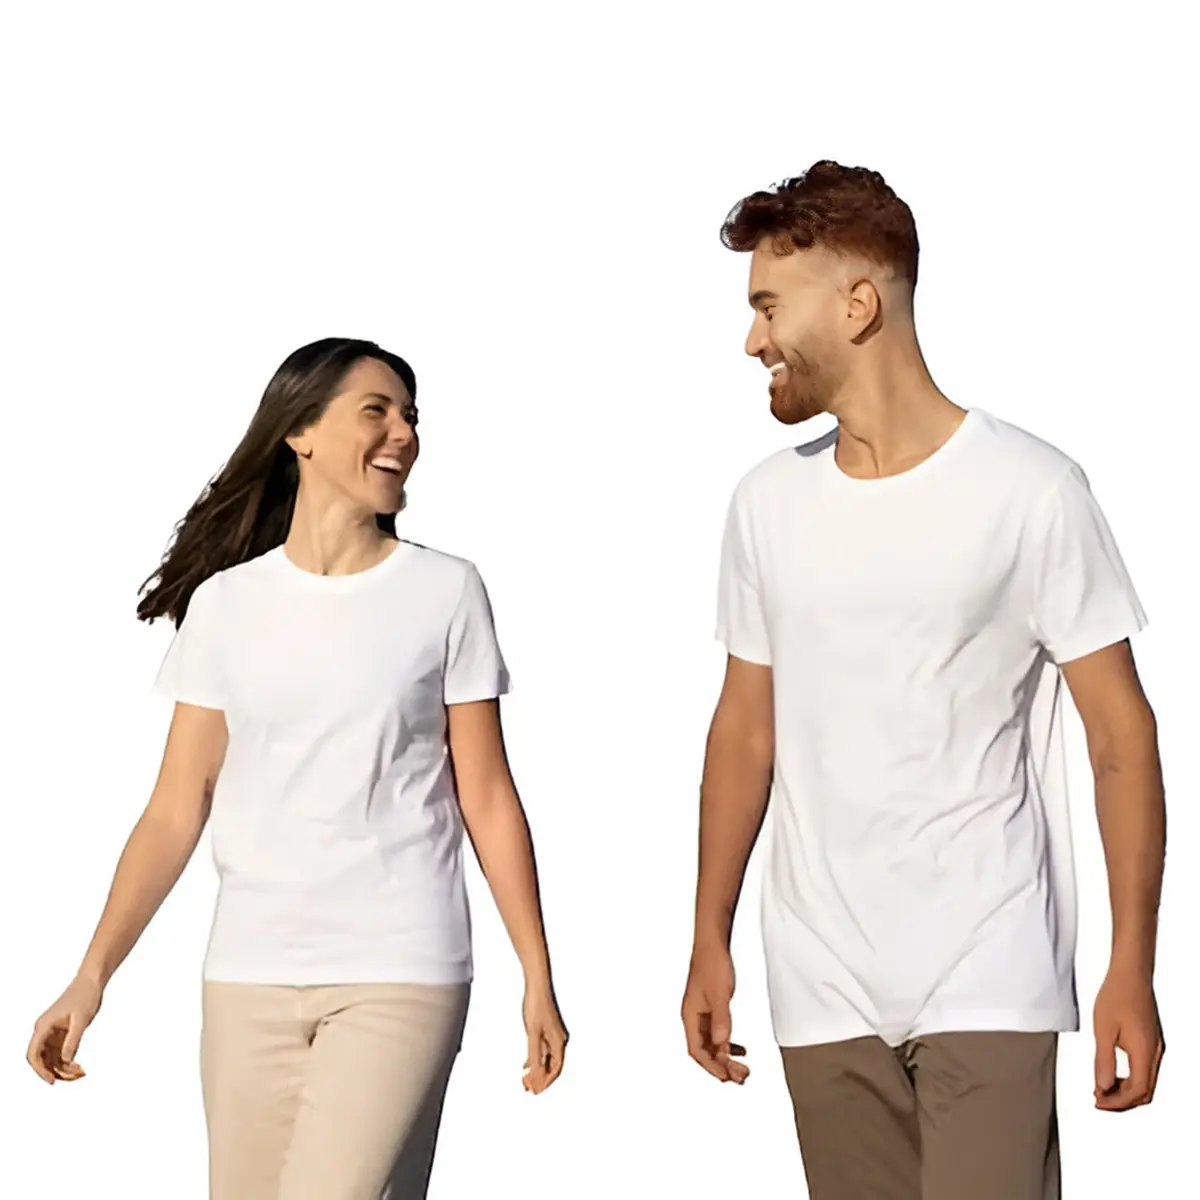 अच्छी कीमतें पुरुषों और महिलाओं की टी-शर्ट निर्माता घर के लिए कीमत के कपड़े